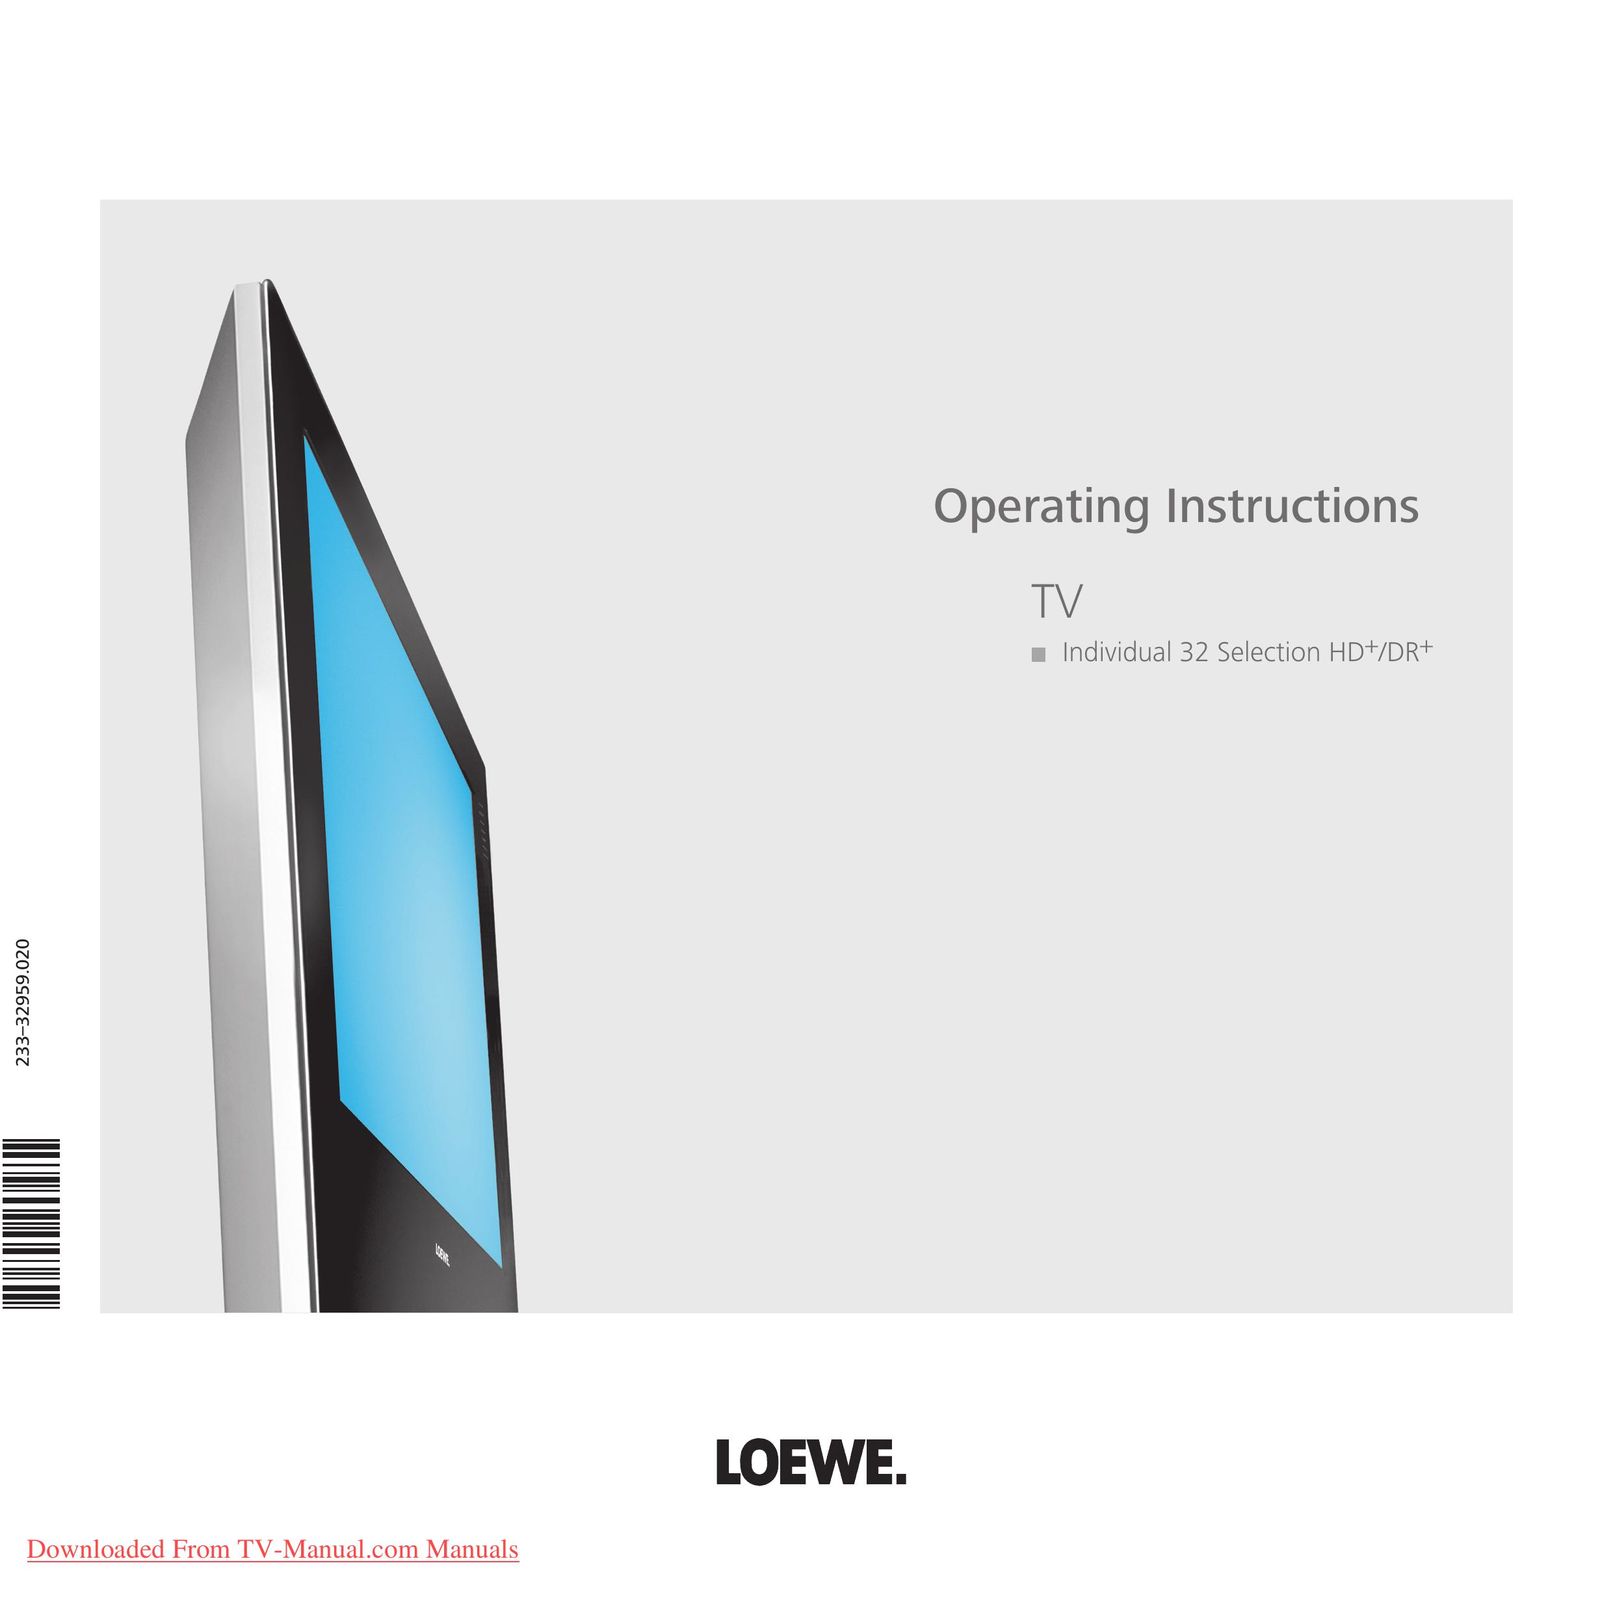 Loewe 23332959.02 CRT Television User Manual